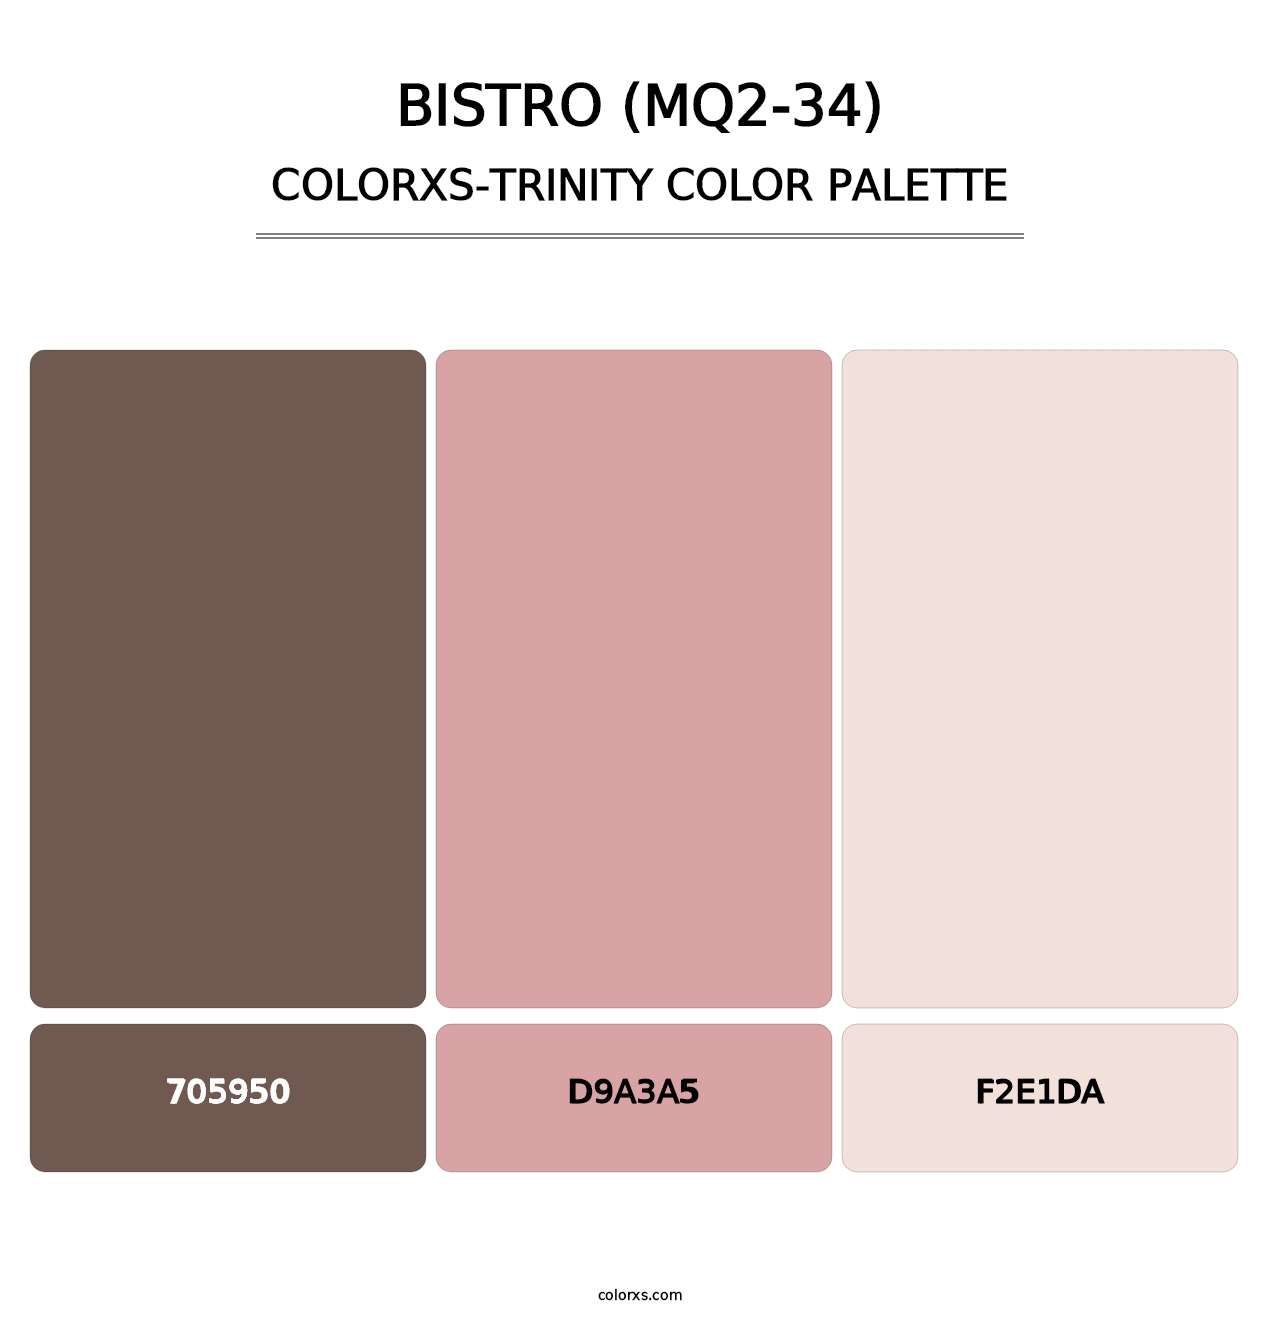 Bistro (MQ2-34) - Colorxs Trinity Palette